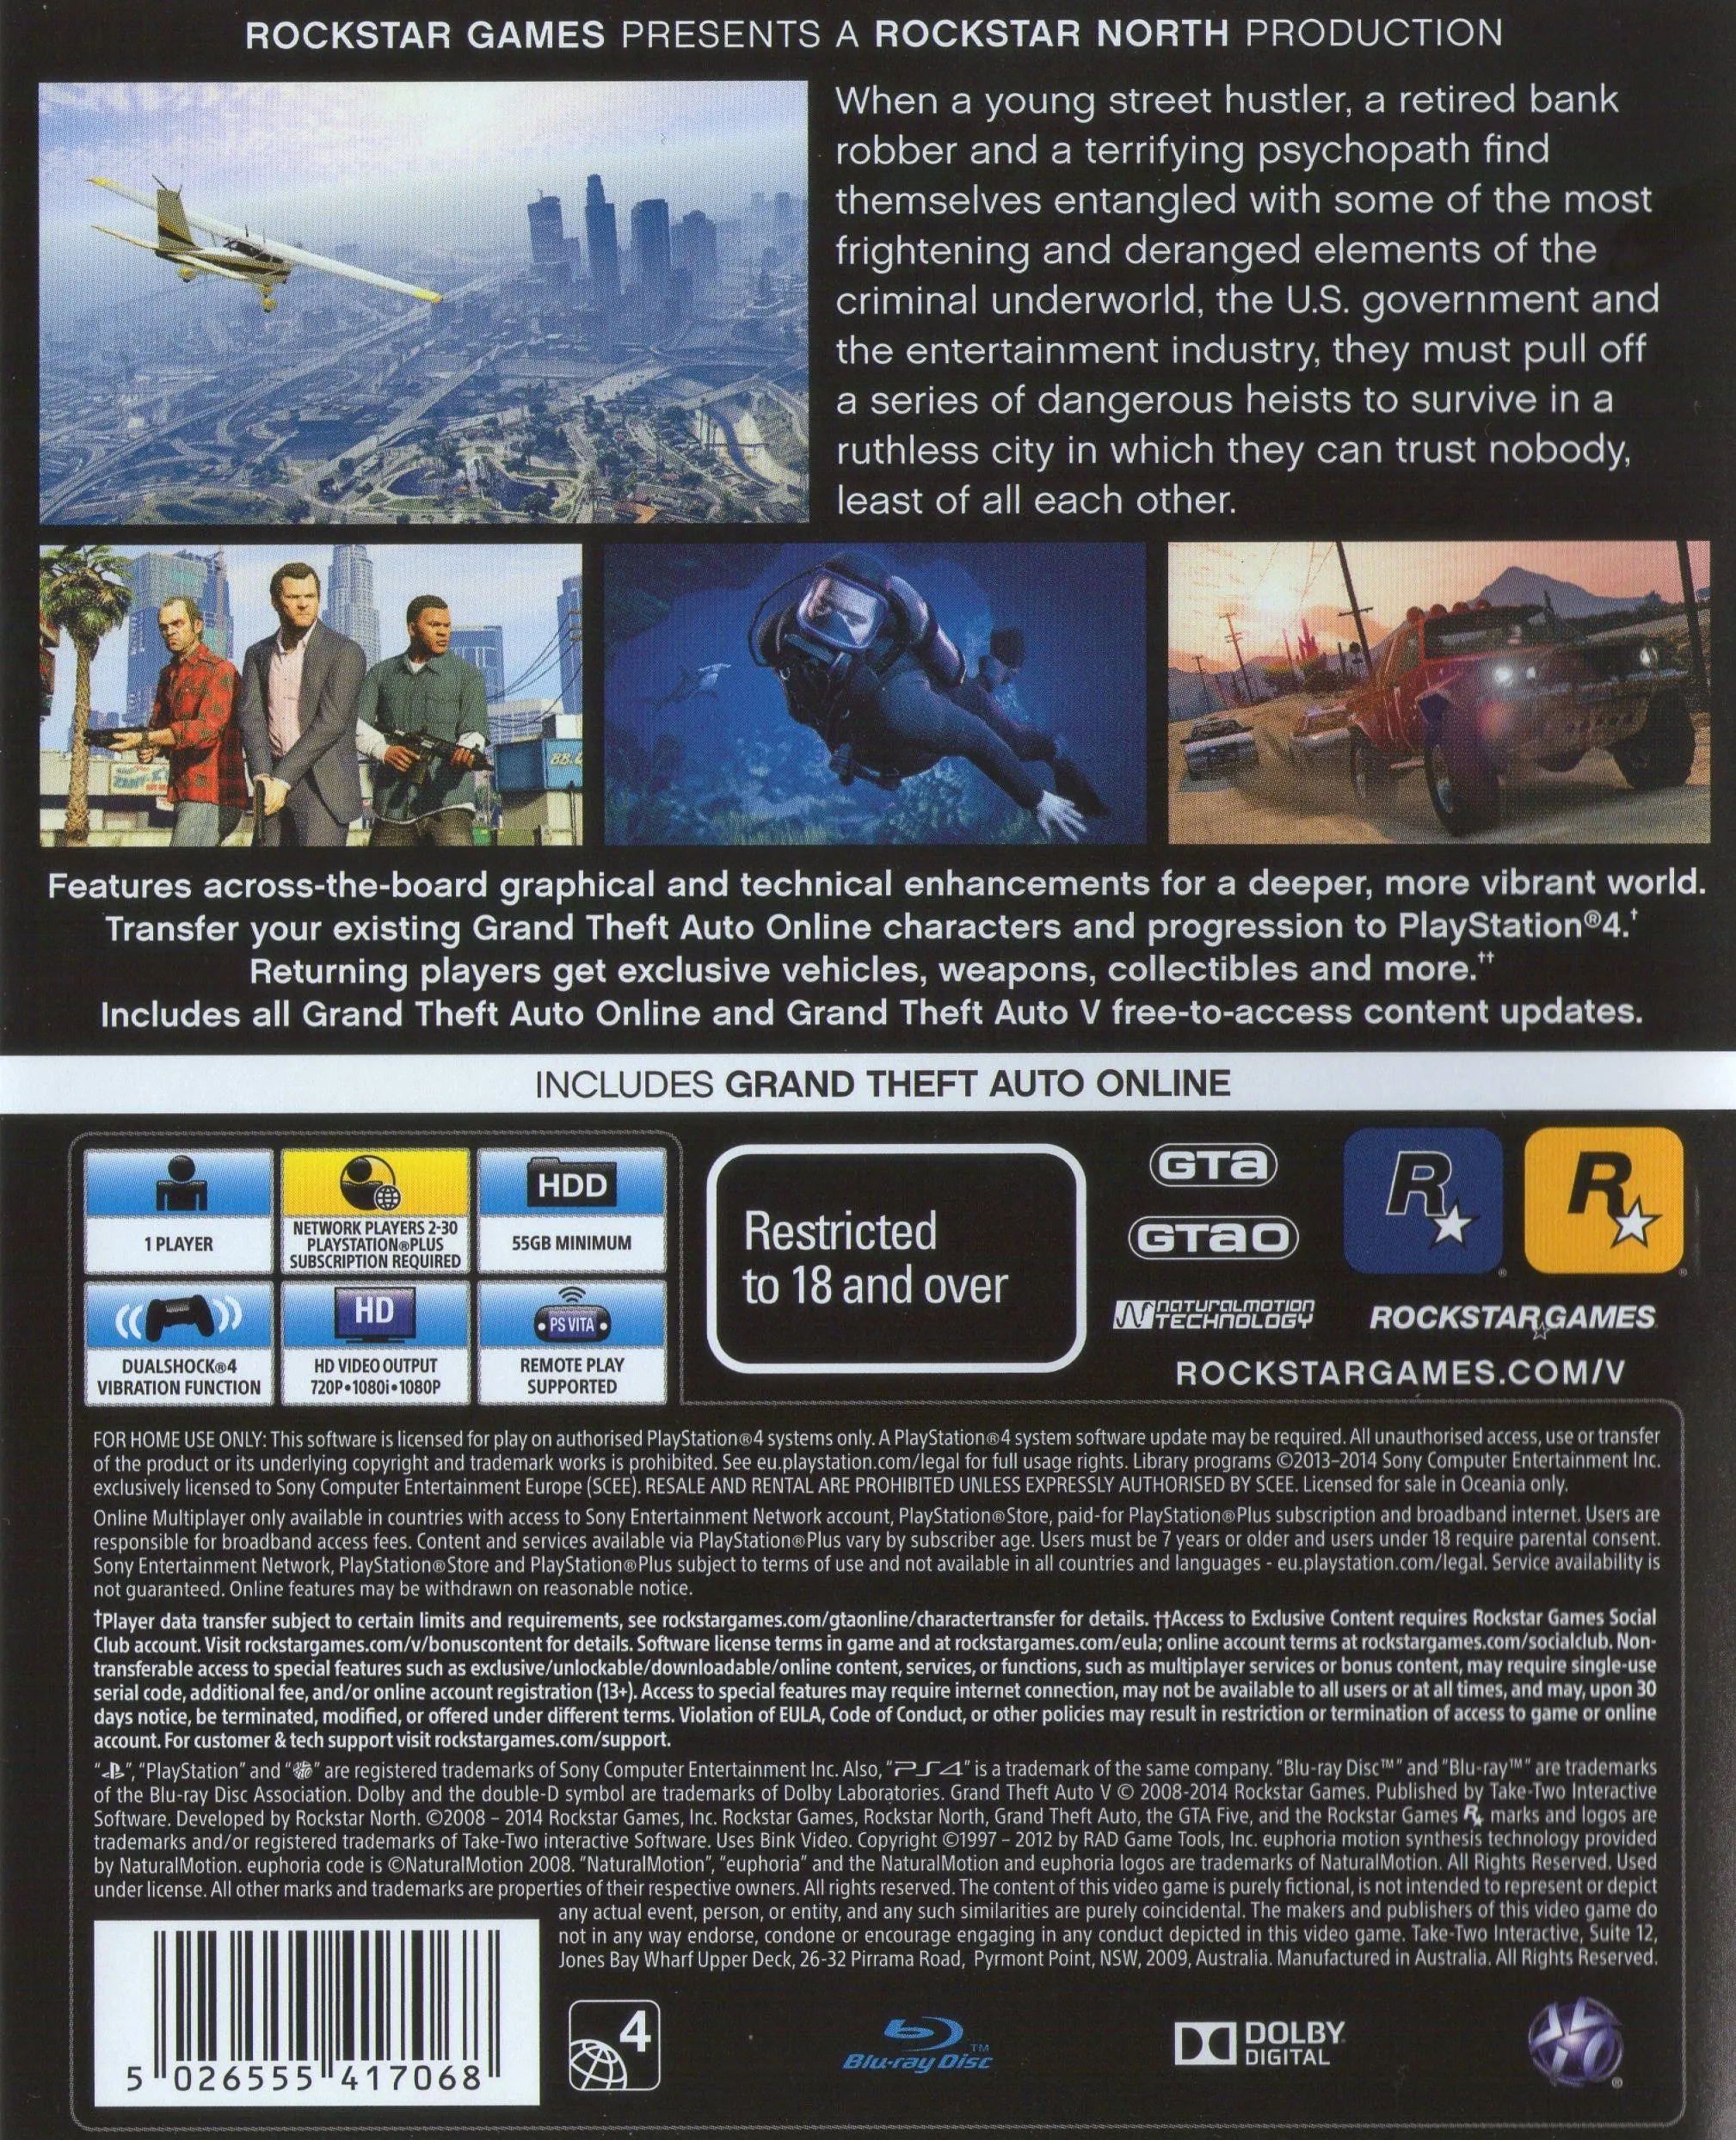 bidden schedel Spaans Gta 5 Premium Edition PS4 Game Gesloten Case Security Strip Snelle  Levering|Spelaanbiedingen| - AliExpress